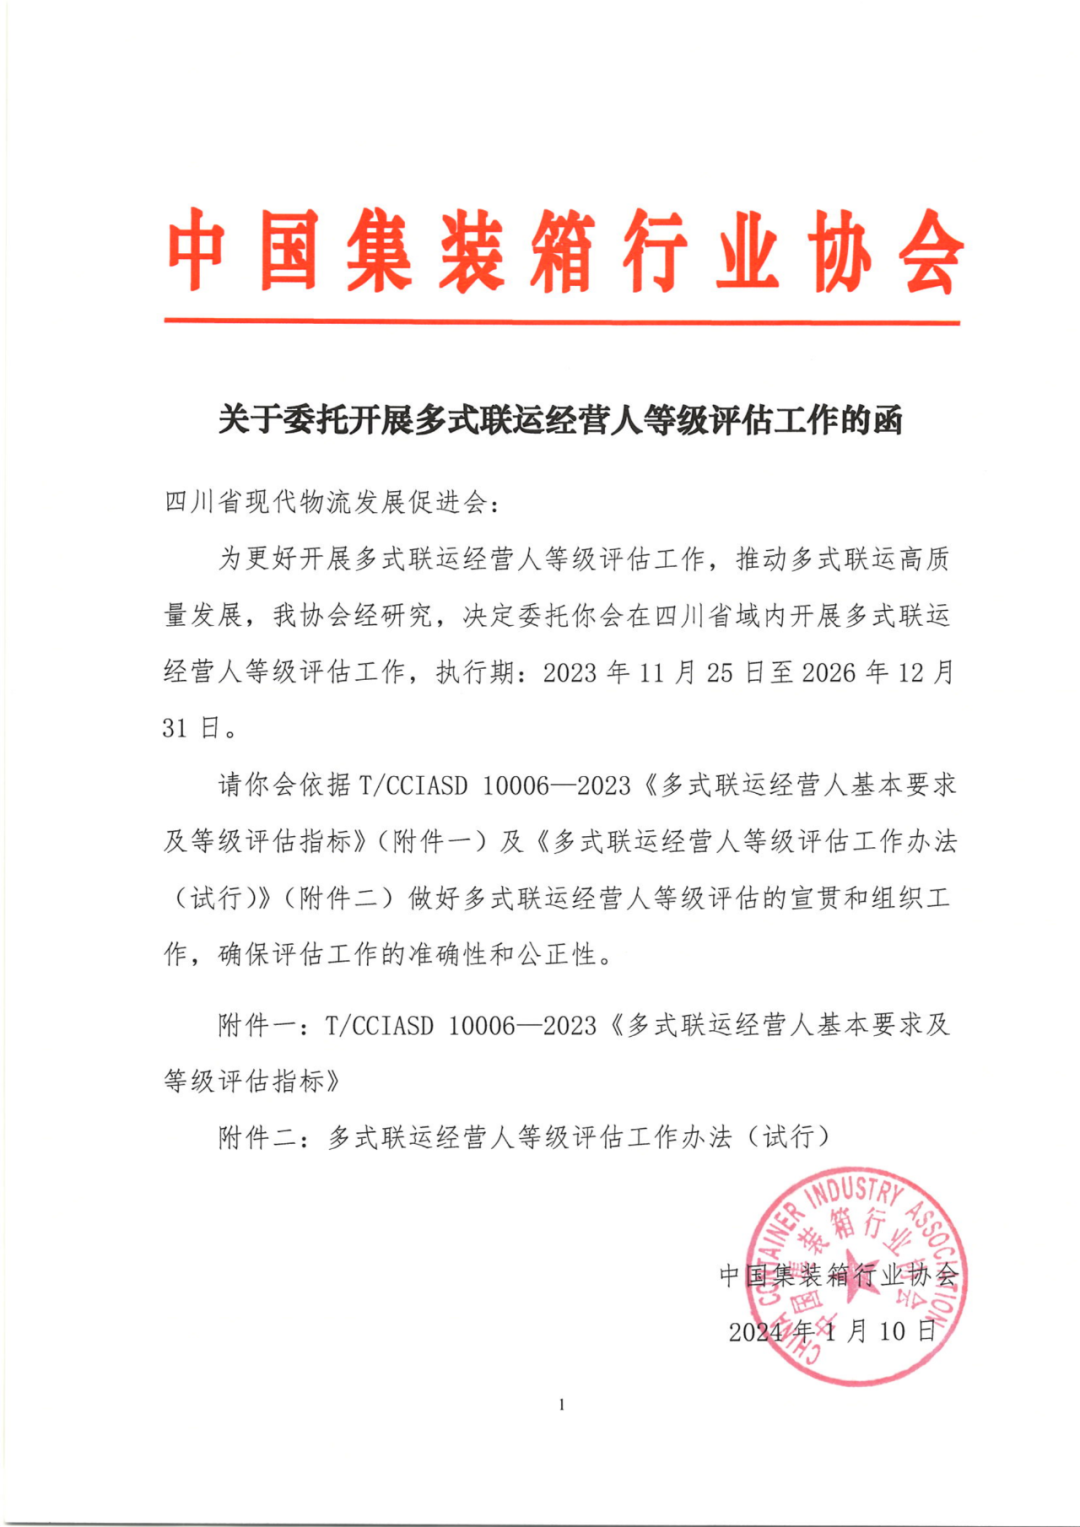 中国集装箱行业协会第三批多式联运经营人等级评估工作正式启动(图10)